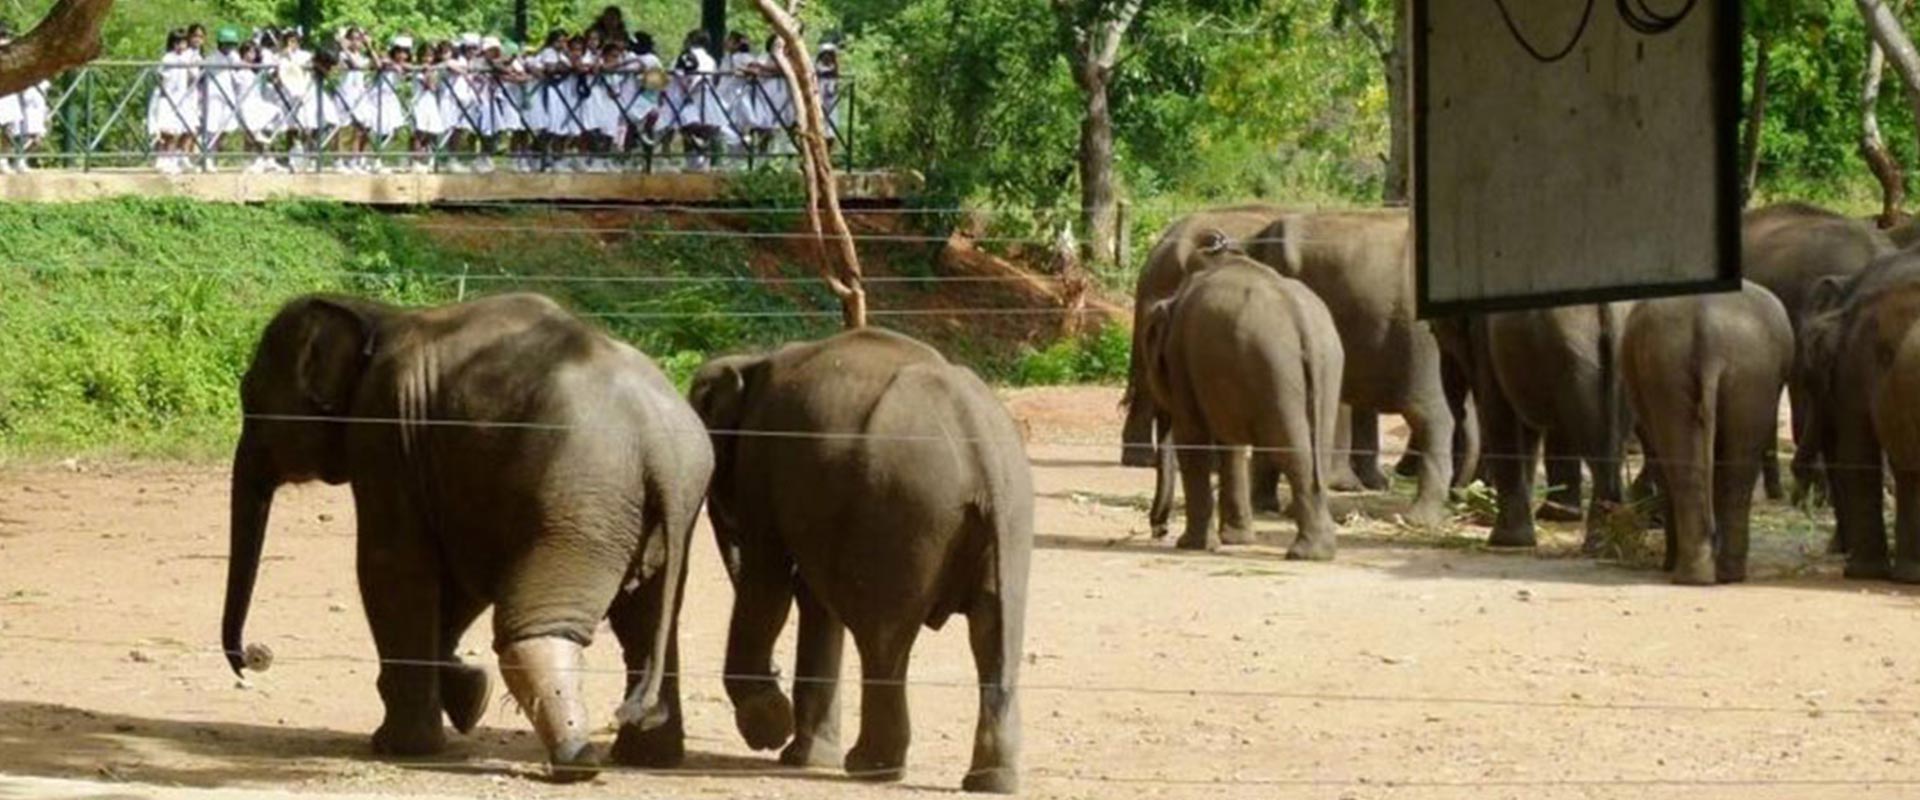 Uda Walawe Elephant Adventure